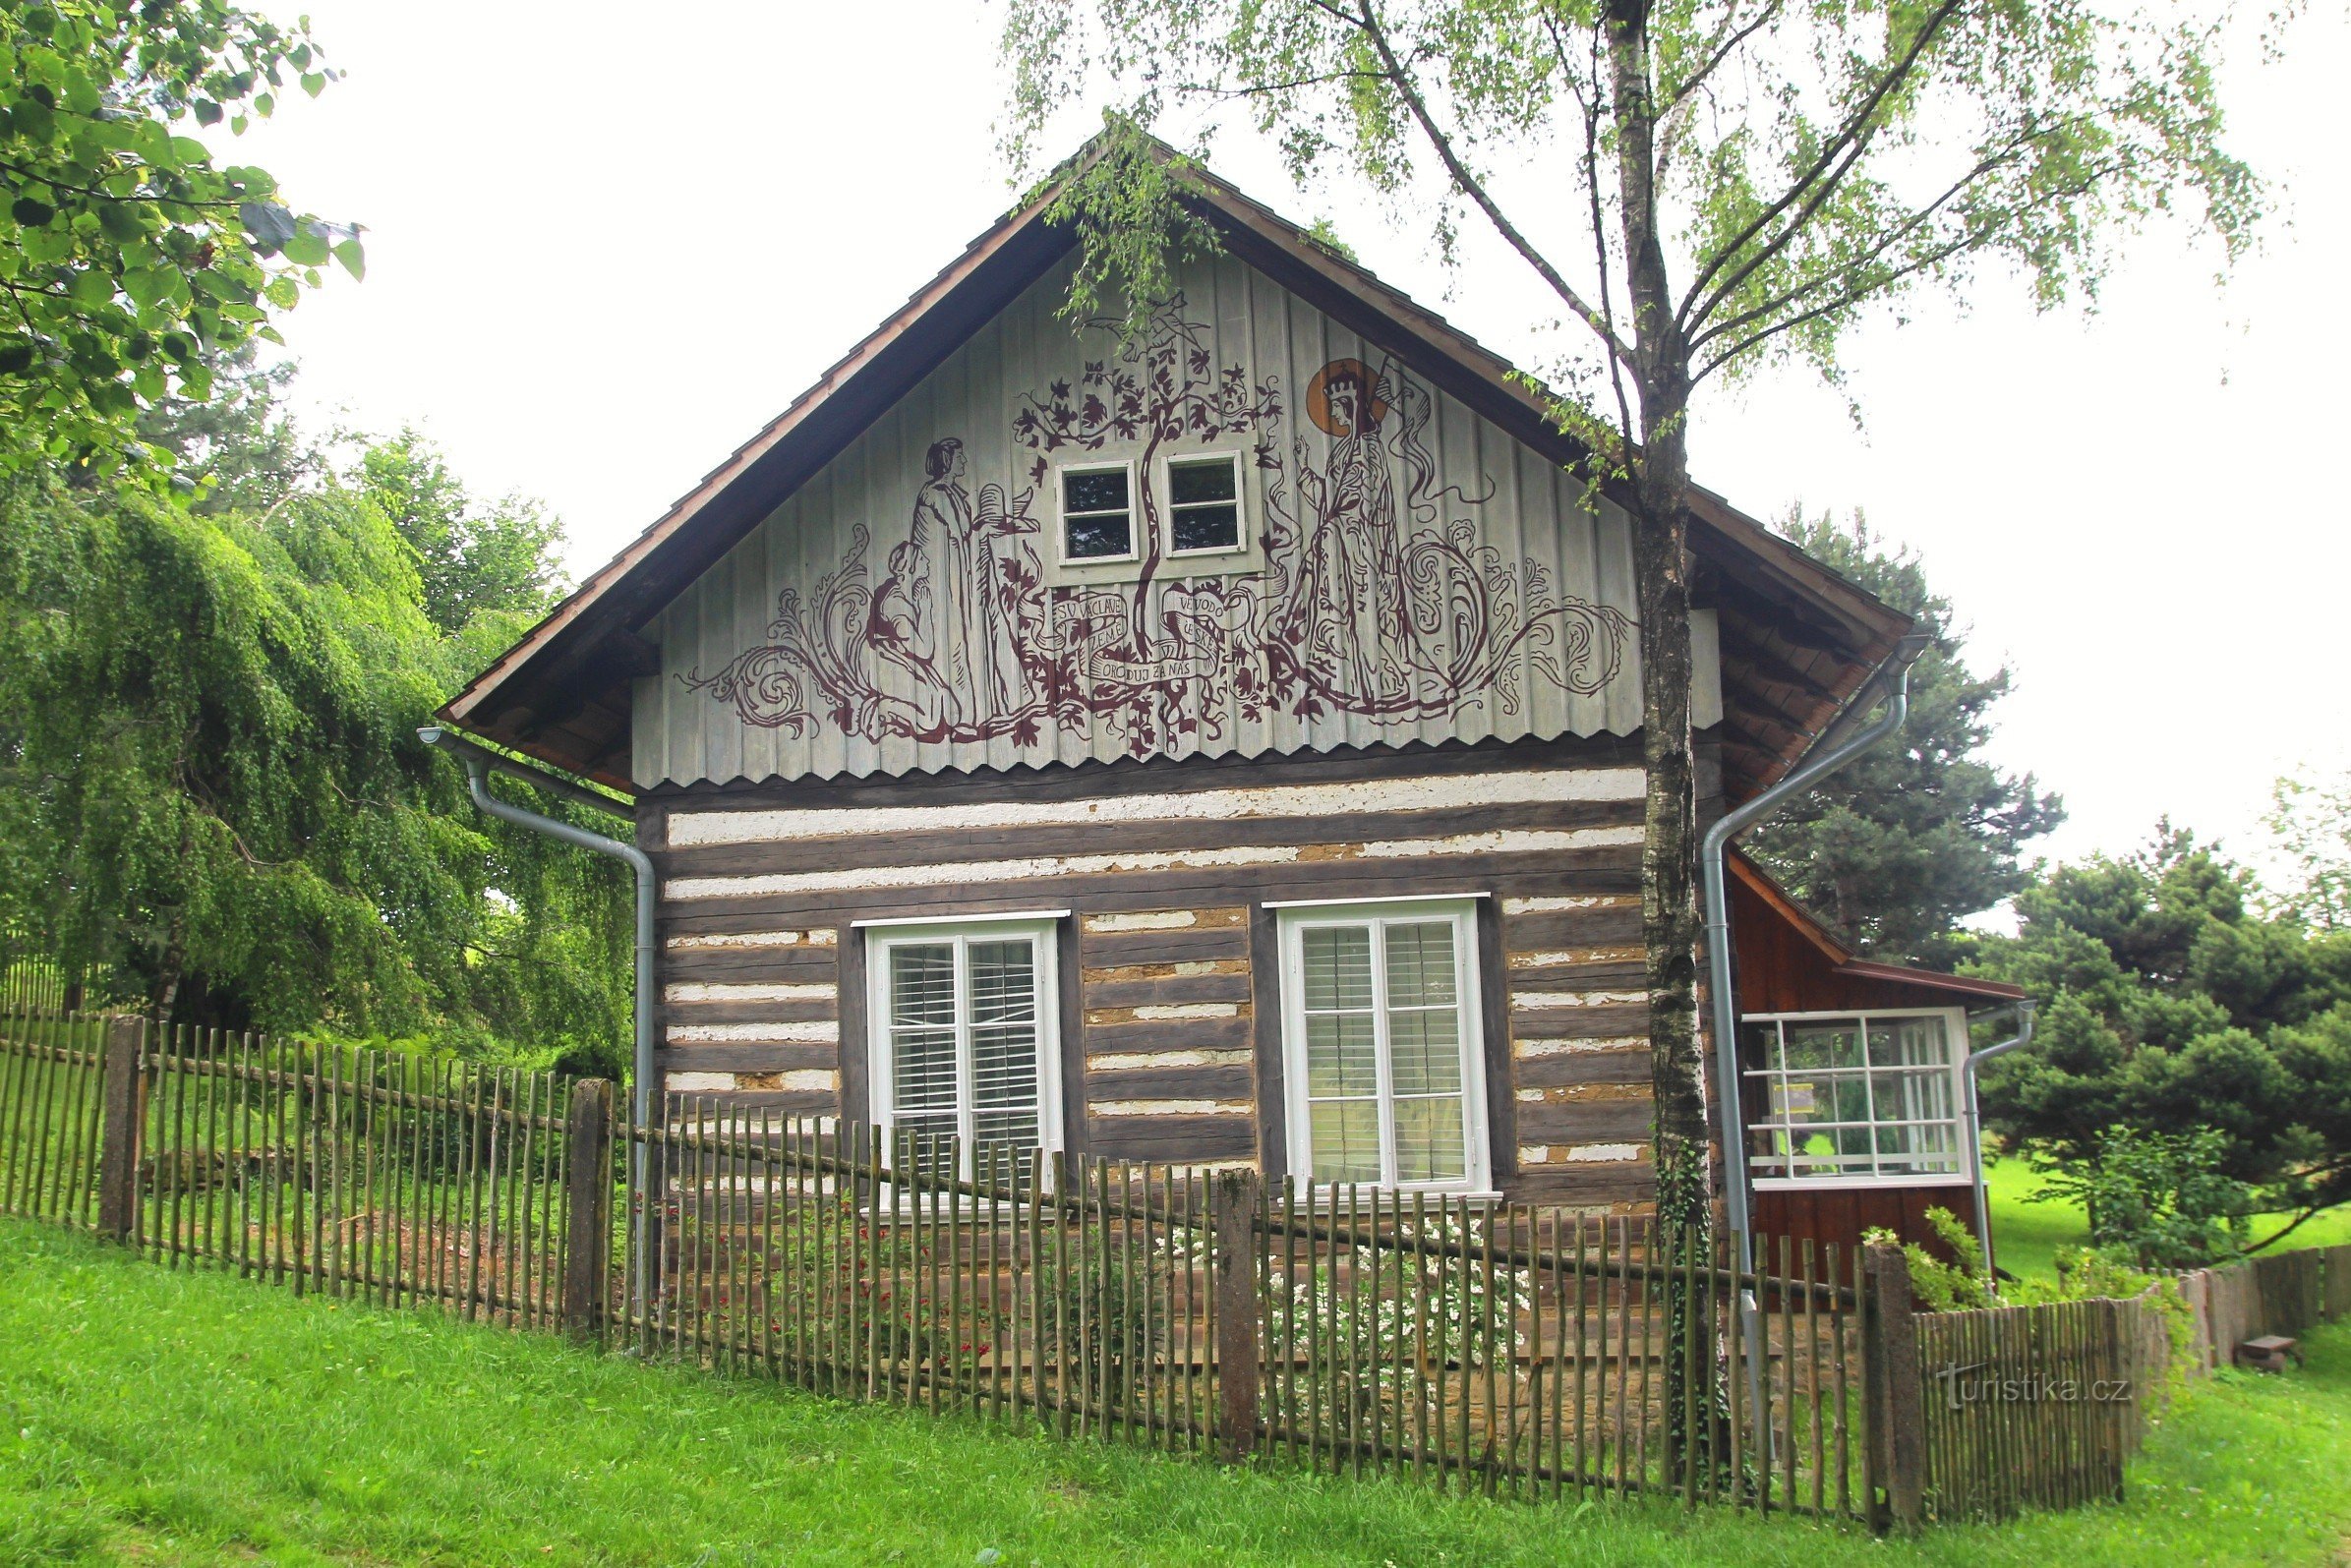 Kozlov - Max Švabinský's cottage, summer 2013